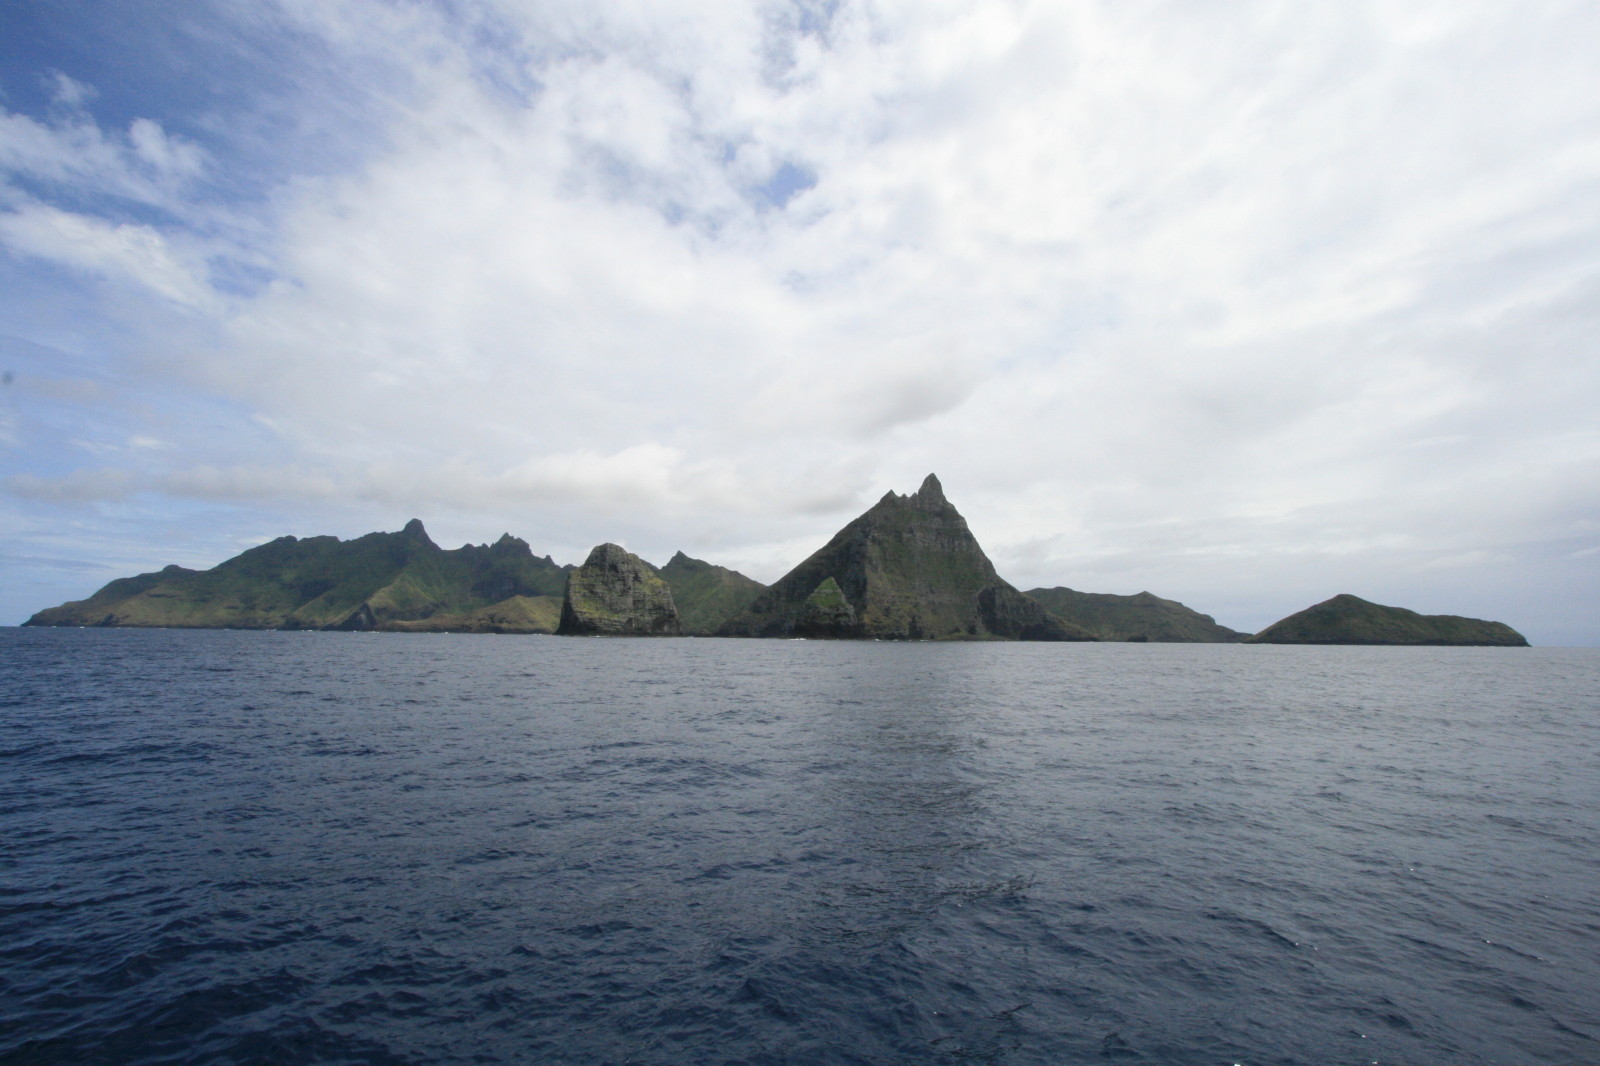 Le projet de la plus grande aire marine protégée présenté et défendu par l'association Rahui Nui no Tuha'a Pae ne verra très probablement jamais le jour ©DR